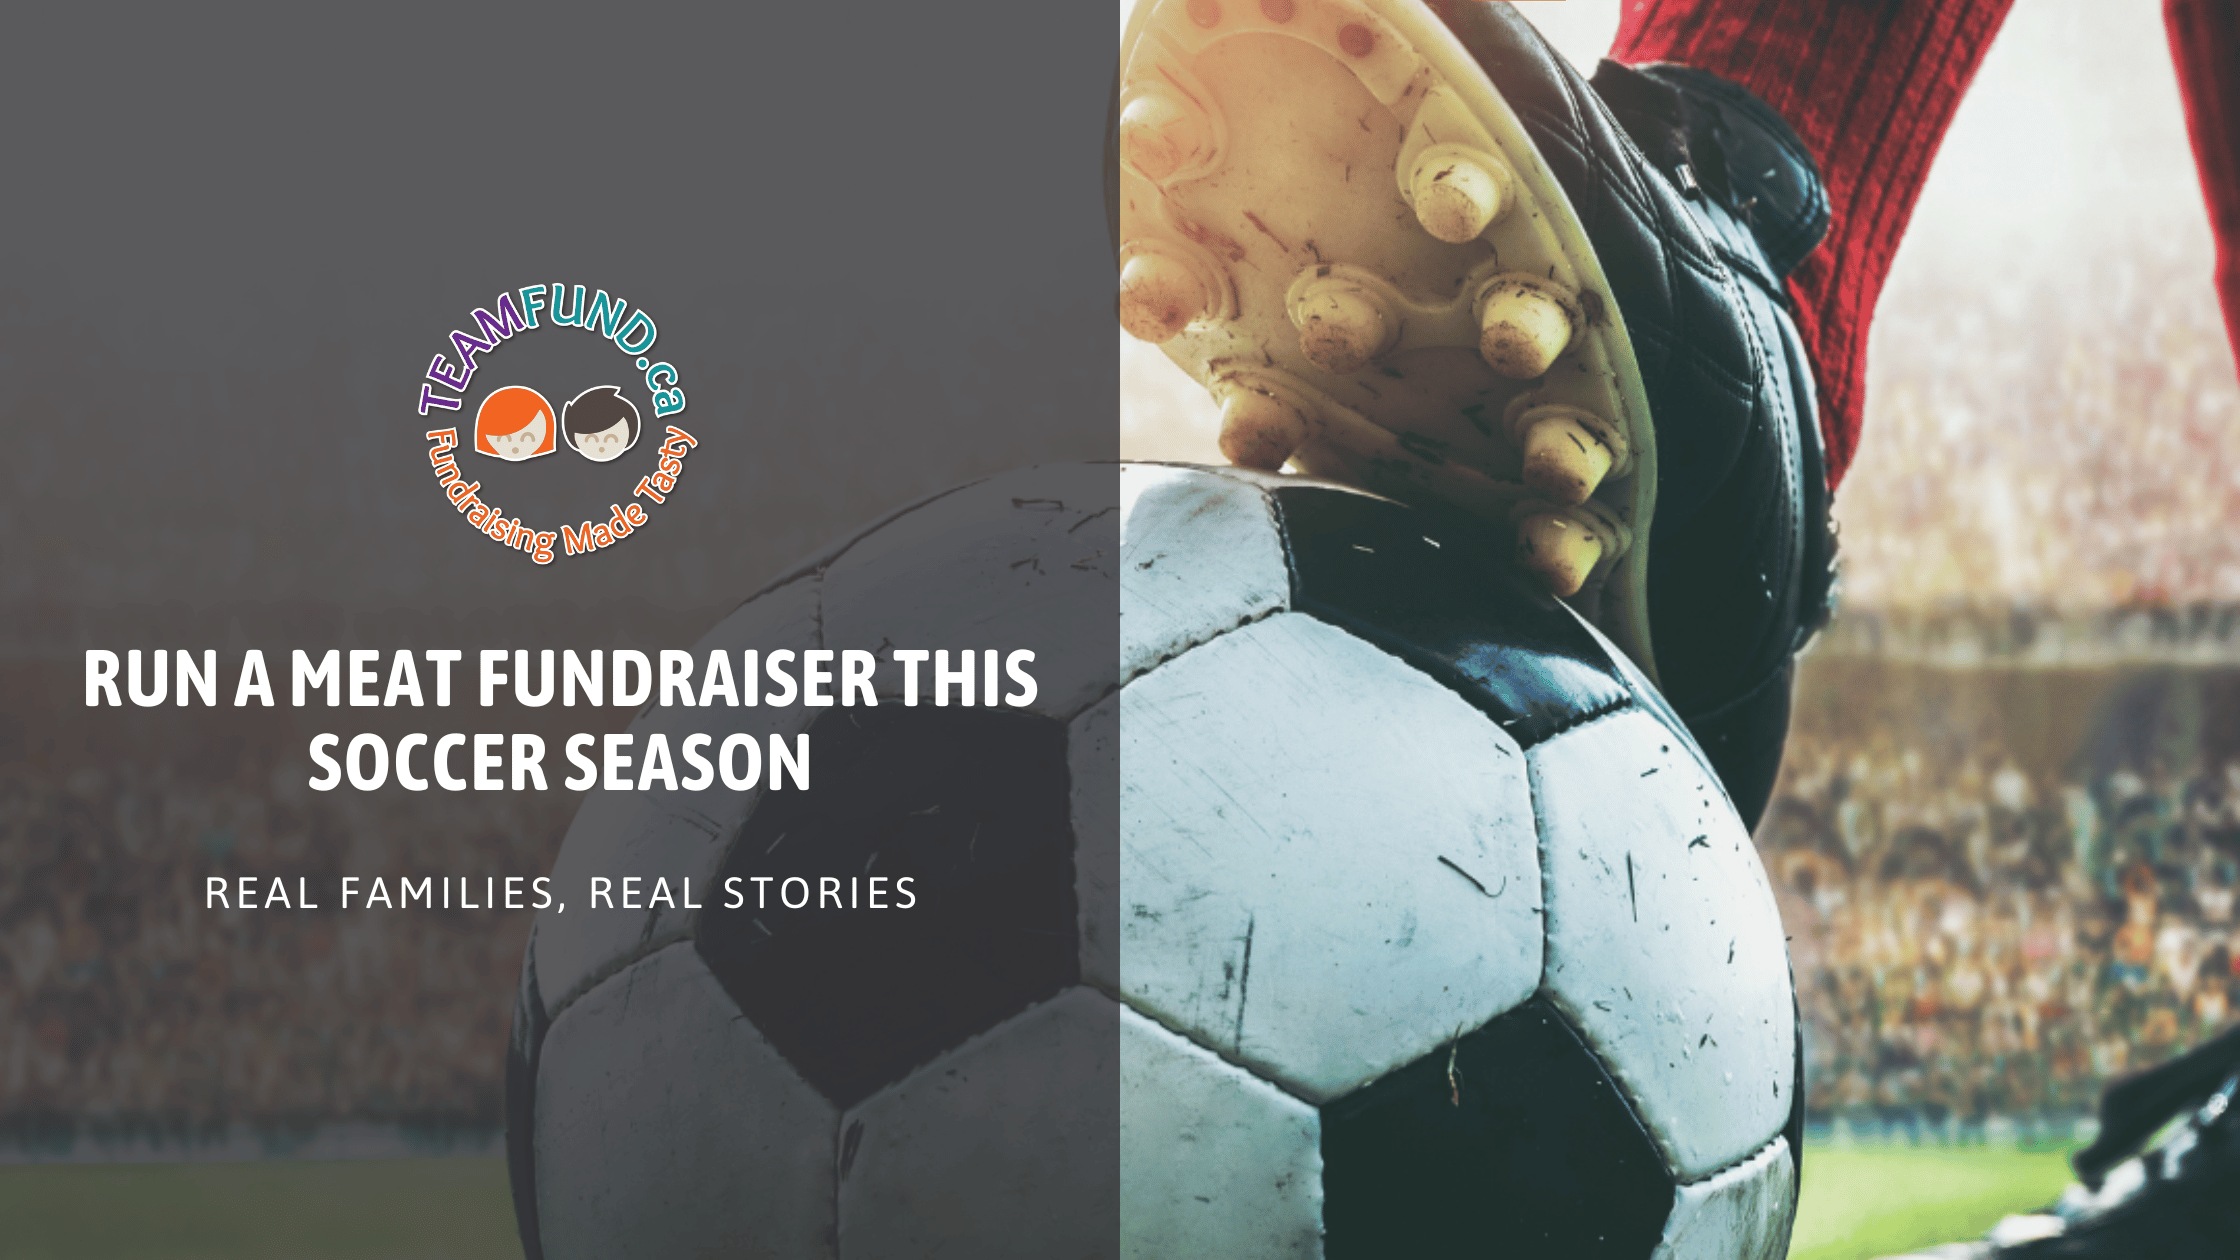 Run a meat fundraiser this soccer season